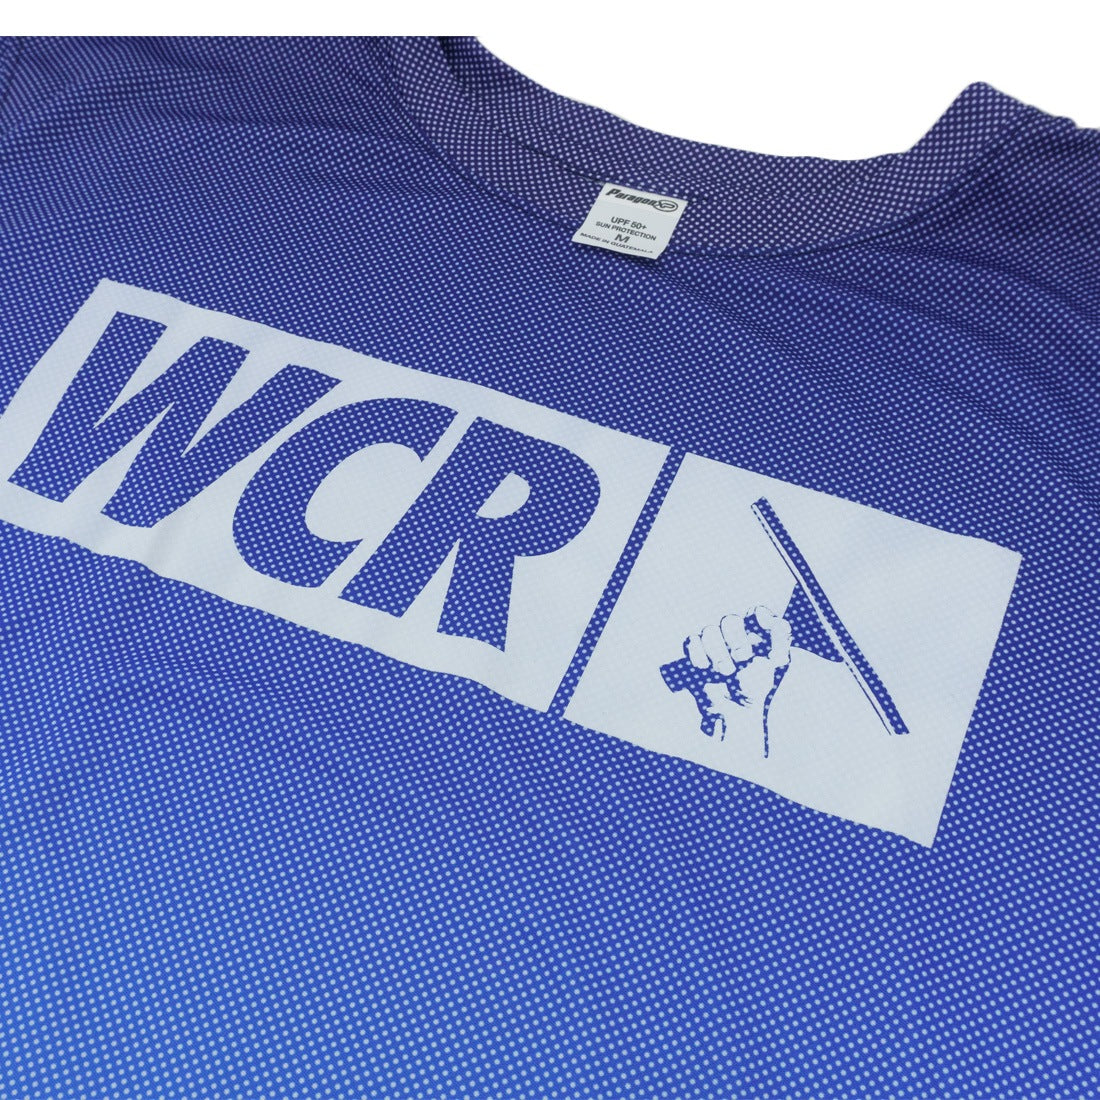 WCR Sunny Shirt Logo Angle View